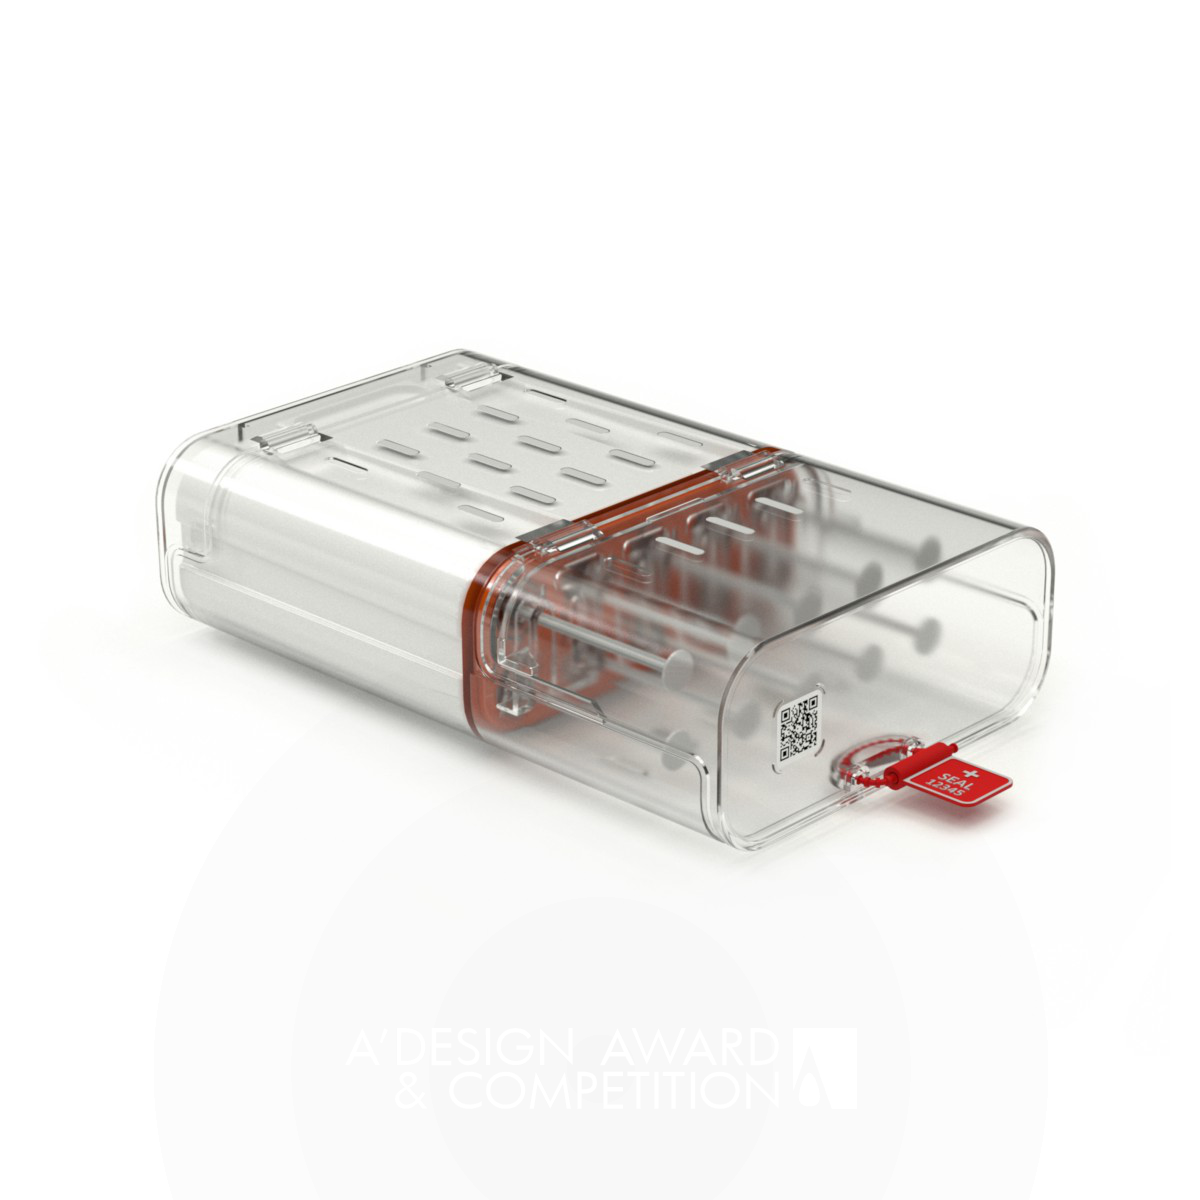 Esc <b>Syringes Transport Container